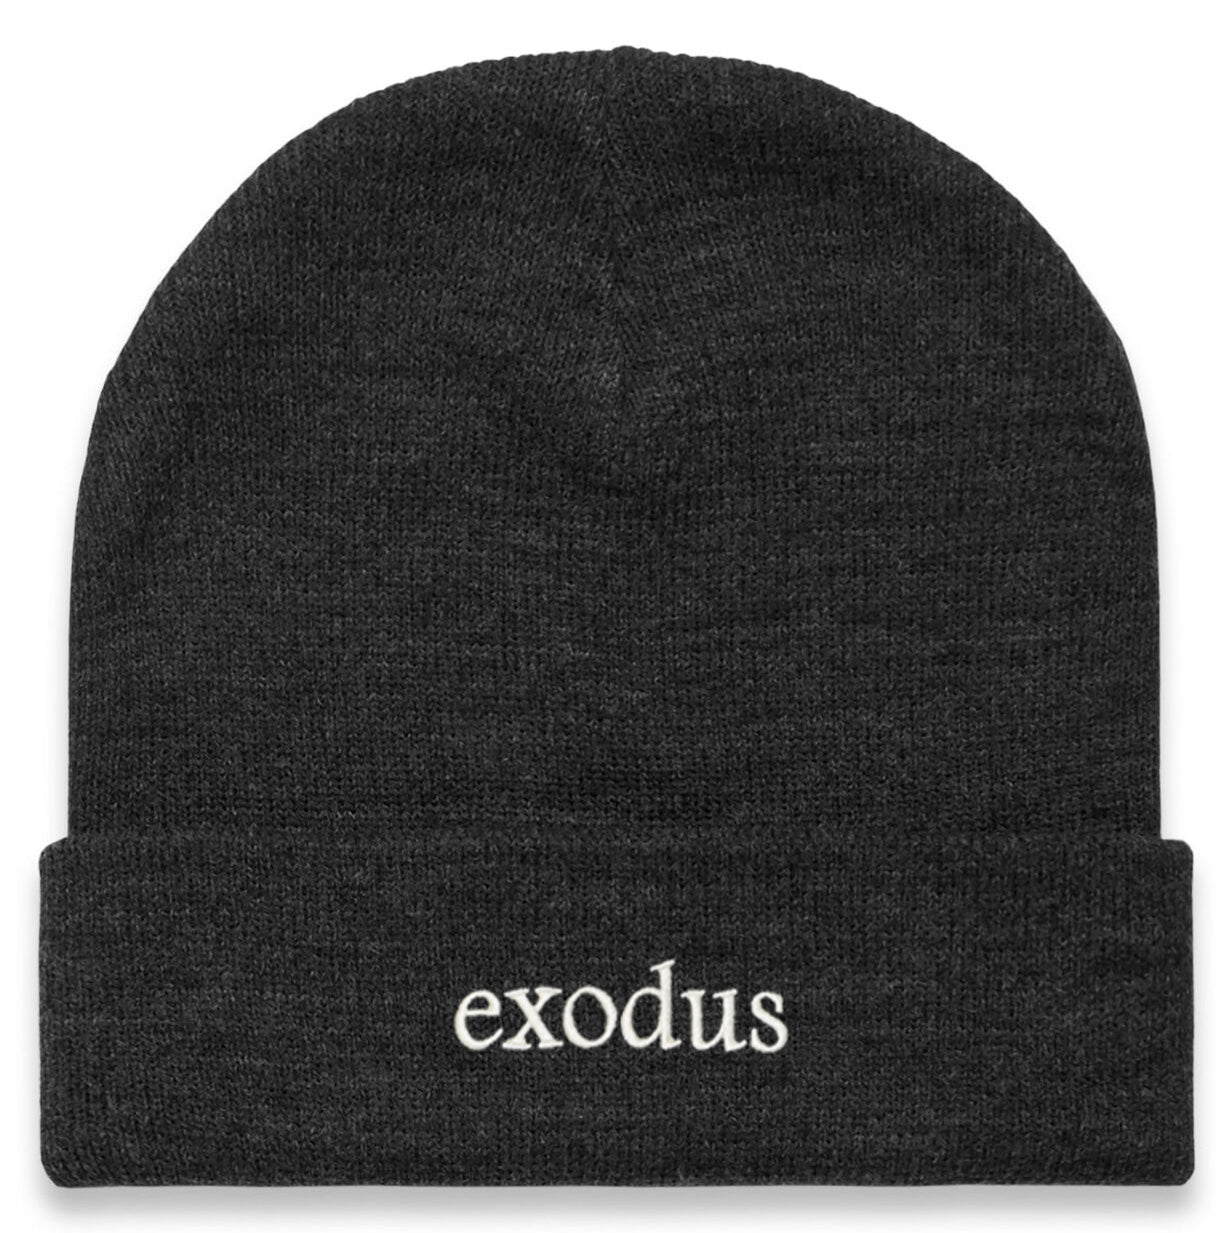 Exodus Clean Cuff Beanie - Asphalt